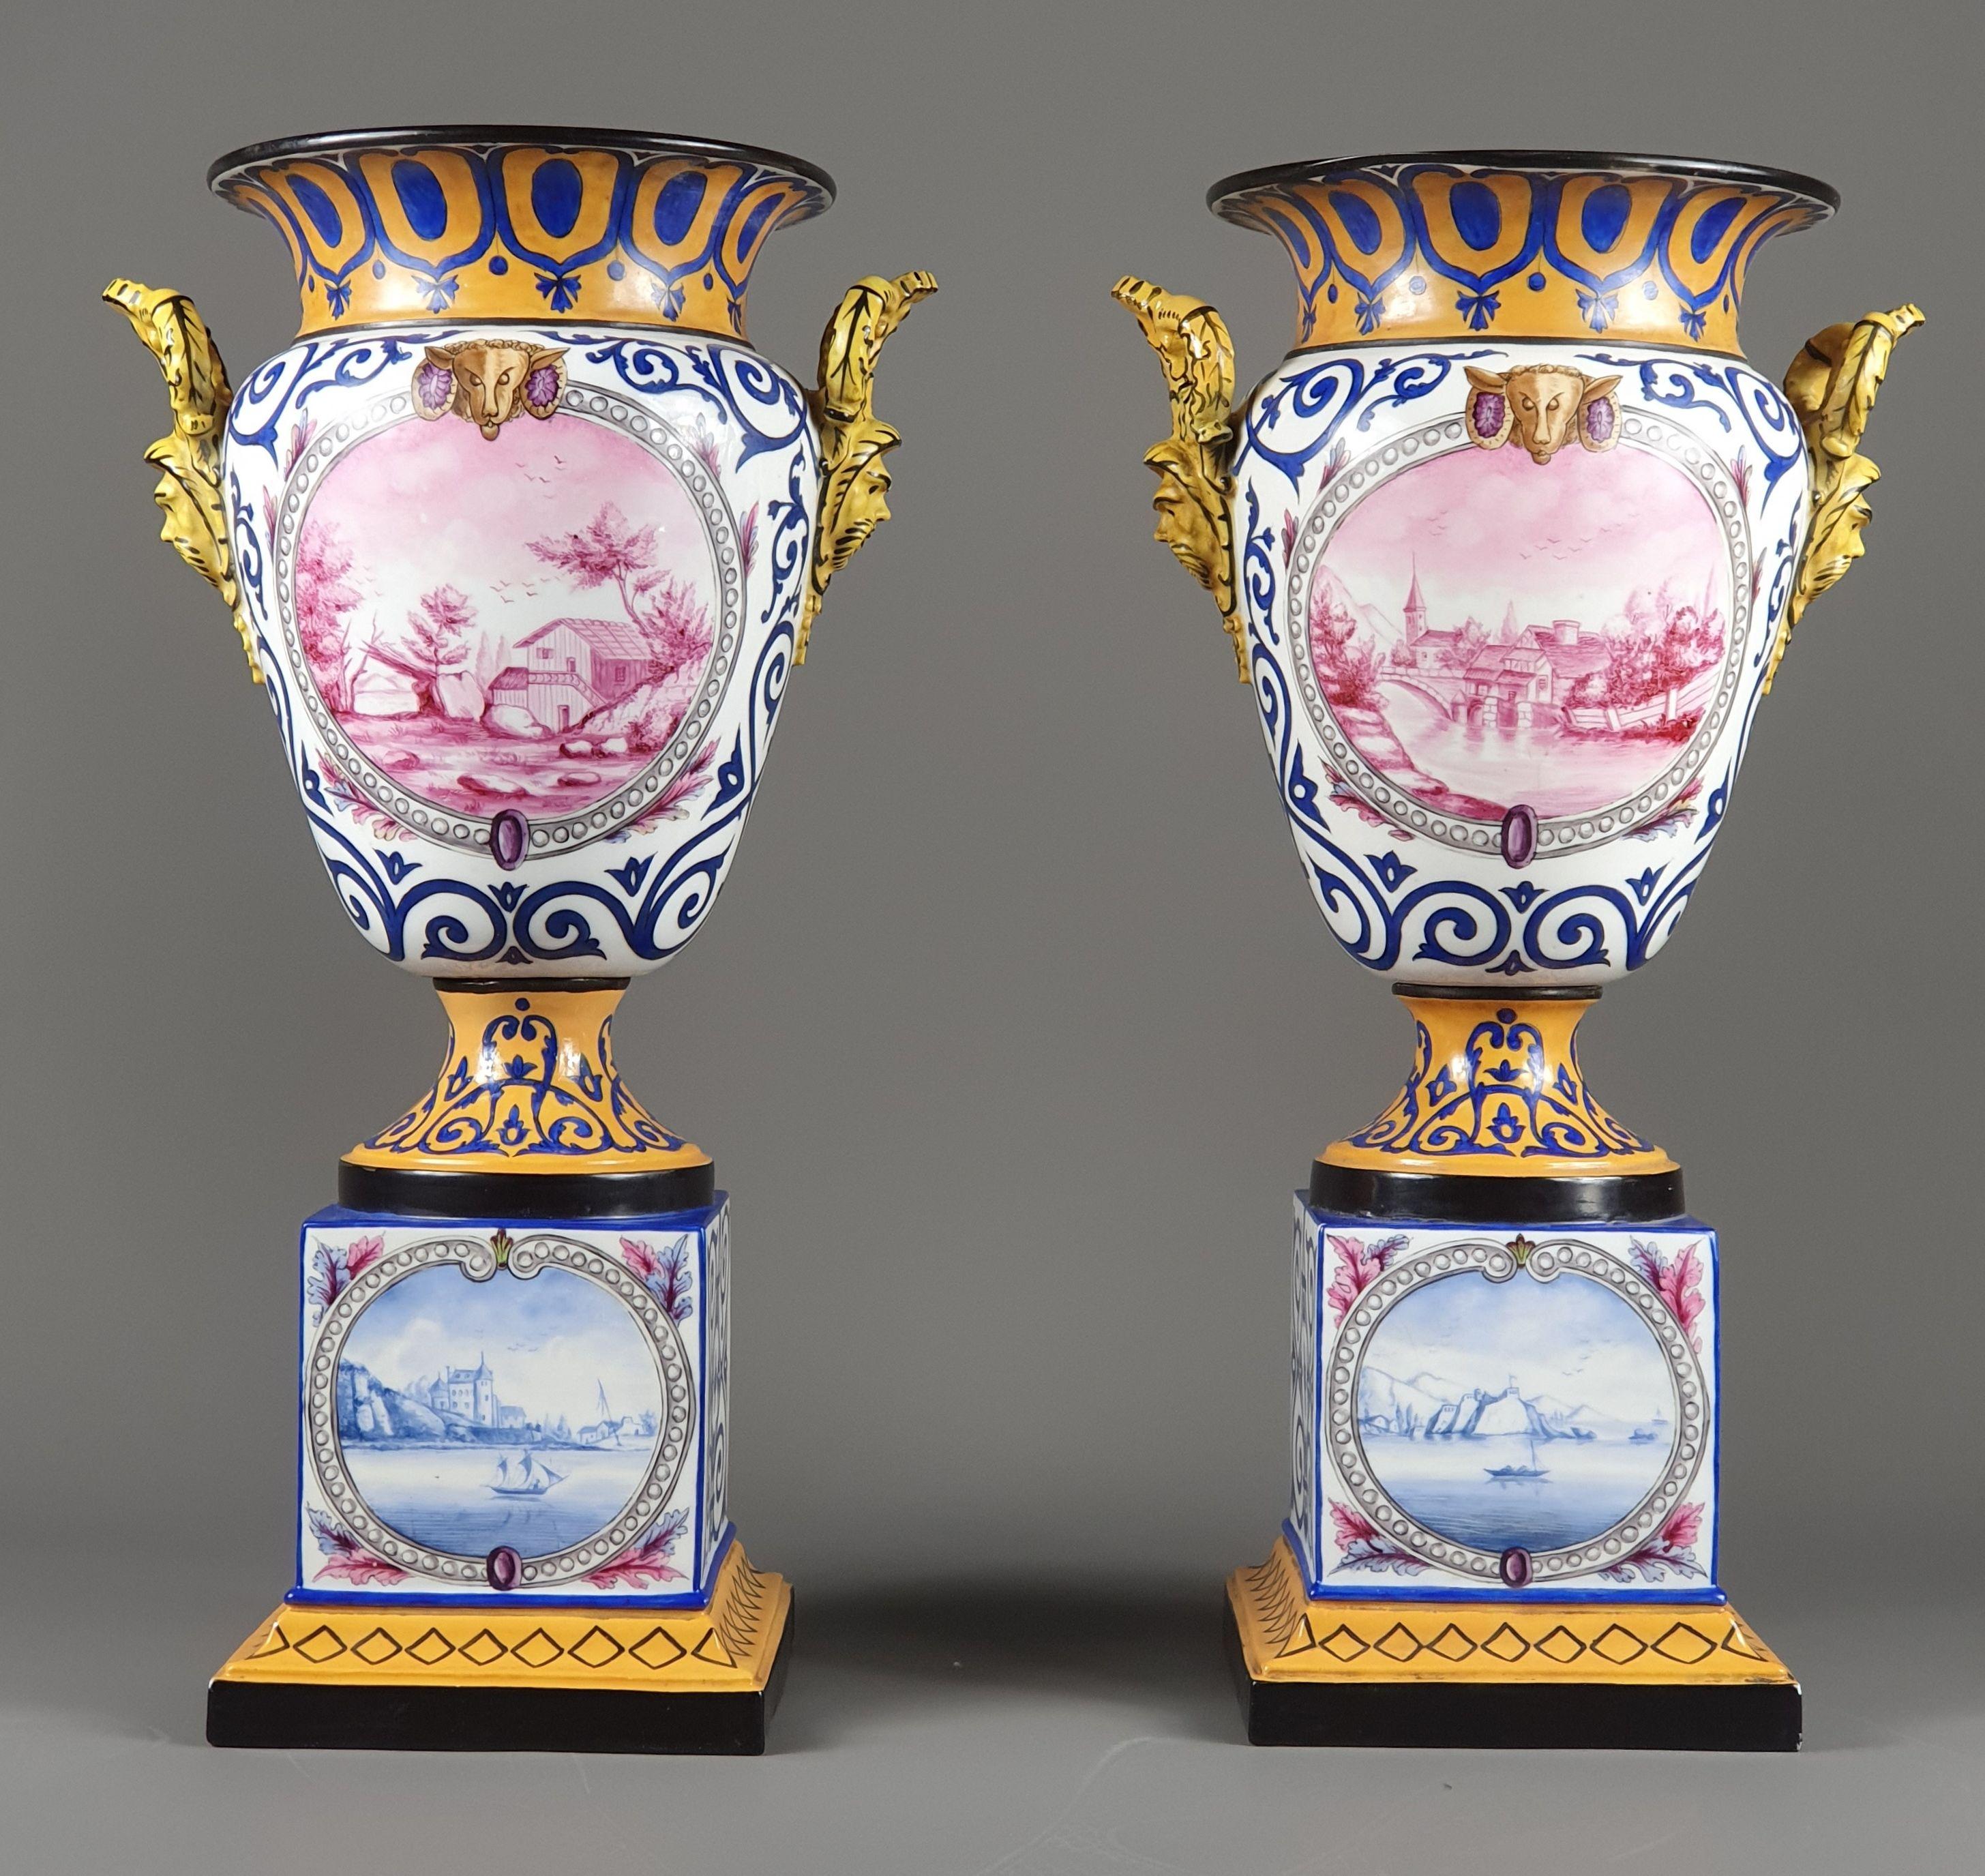 Rare paire de vases en porcelaine de Paris composée d'une base cubique sur un socle évasé et surmontée d'un vase de style Médicis à la panse généreuse.

Superbe décor sur fond orange et blanc orné de feuillages de couleur marine présentant